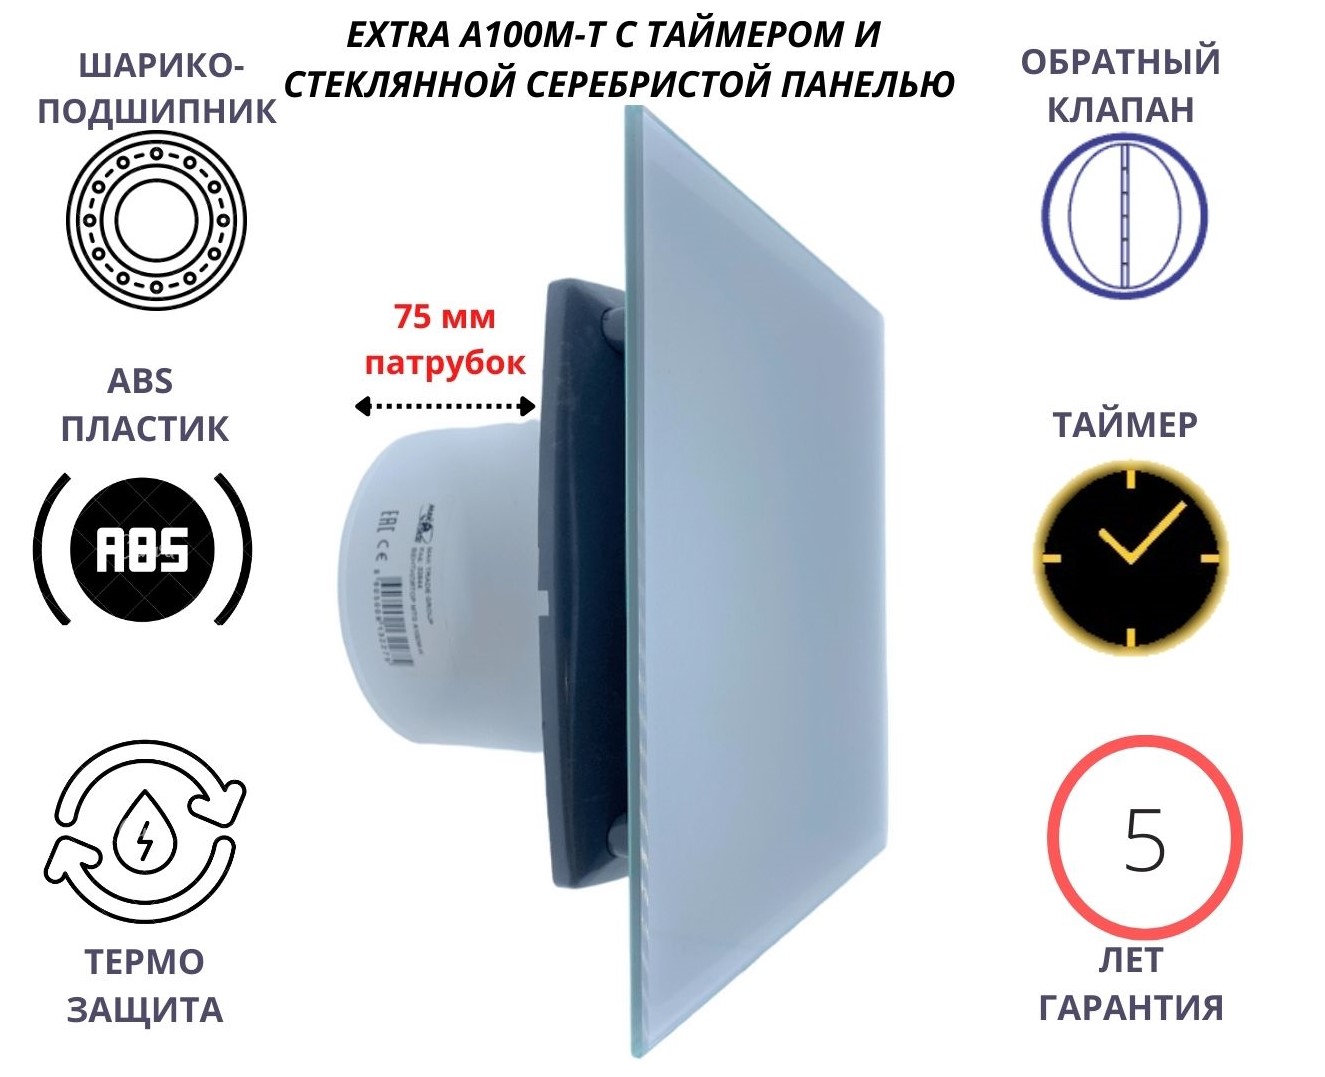 Вентилятор с таймером, D100мм, со стеклянной серебристой панелью EXTRA A100М-T, Сербия